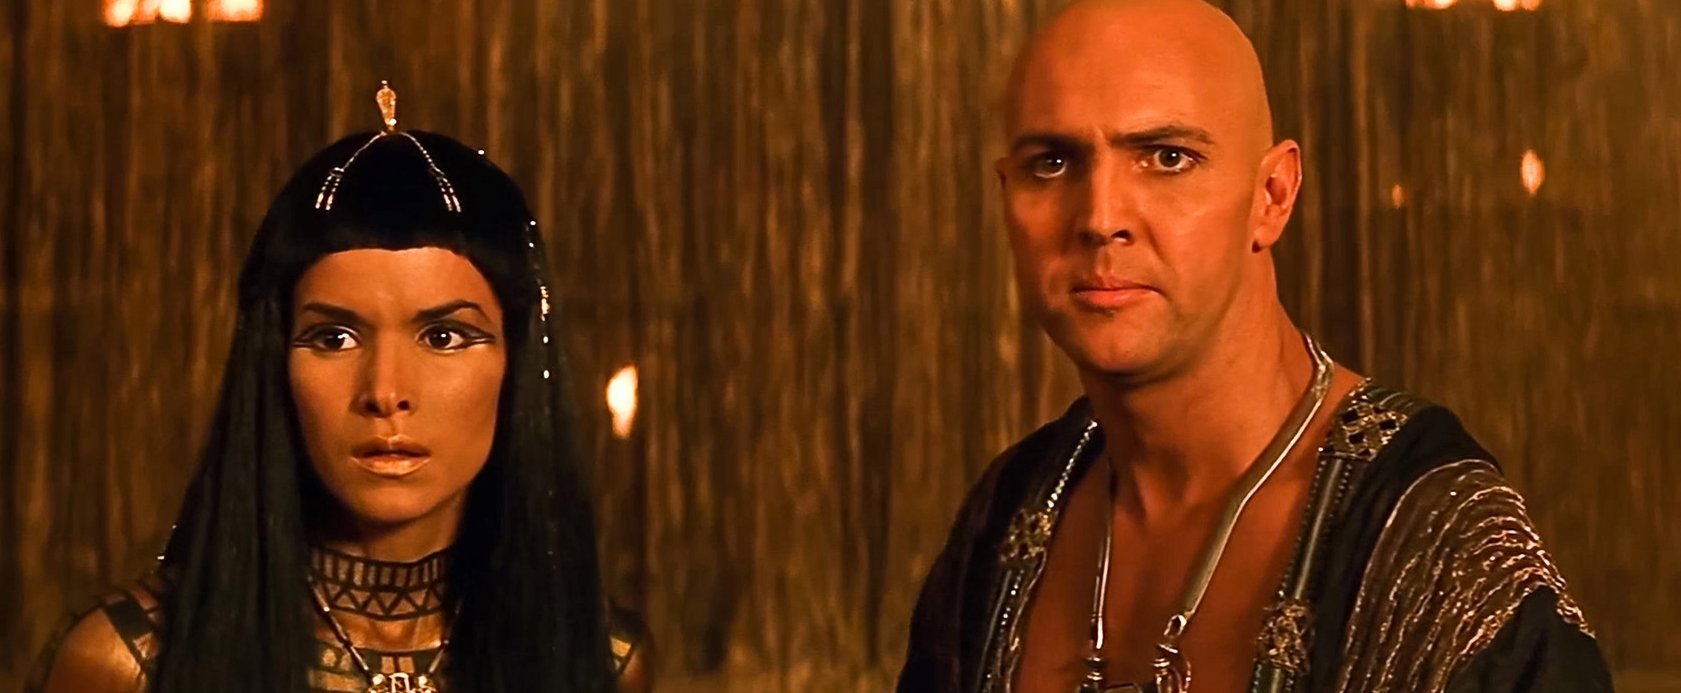 így néz ki 52 évesen A múmia-filmek bombasztikus szépségű sztárja, Imhotep örök szerelme